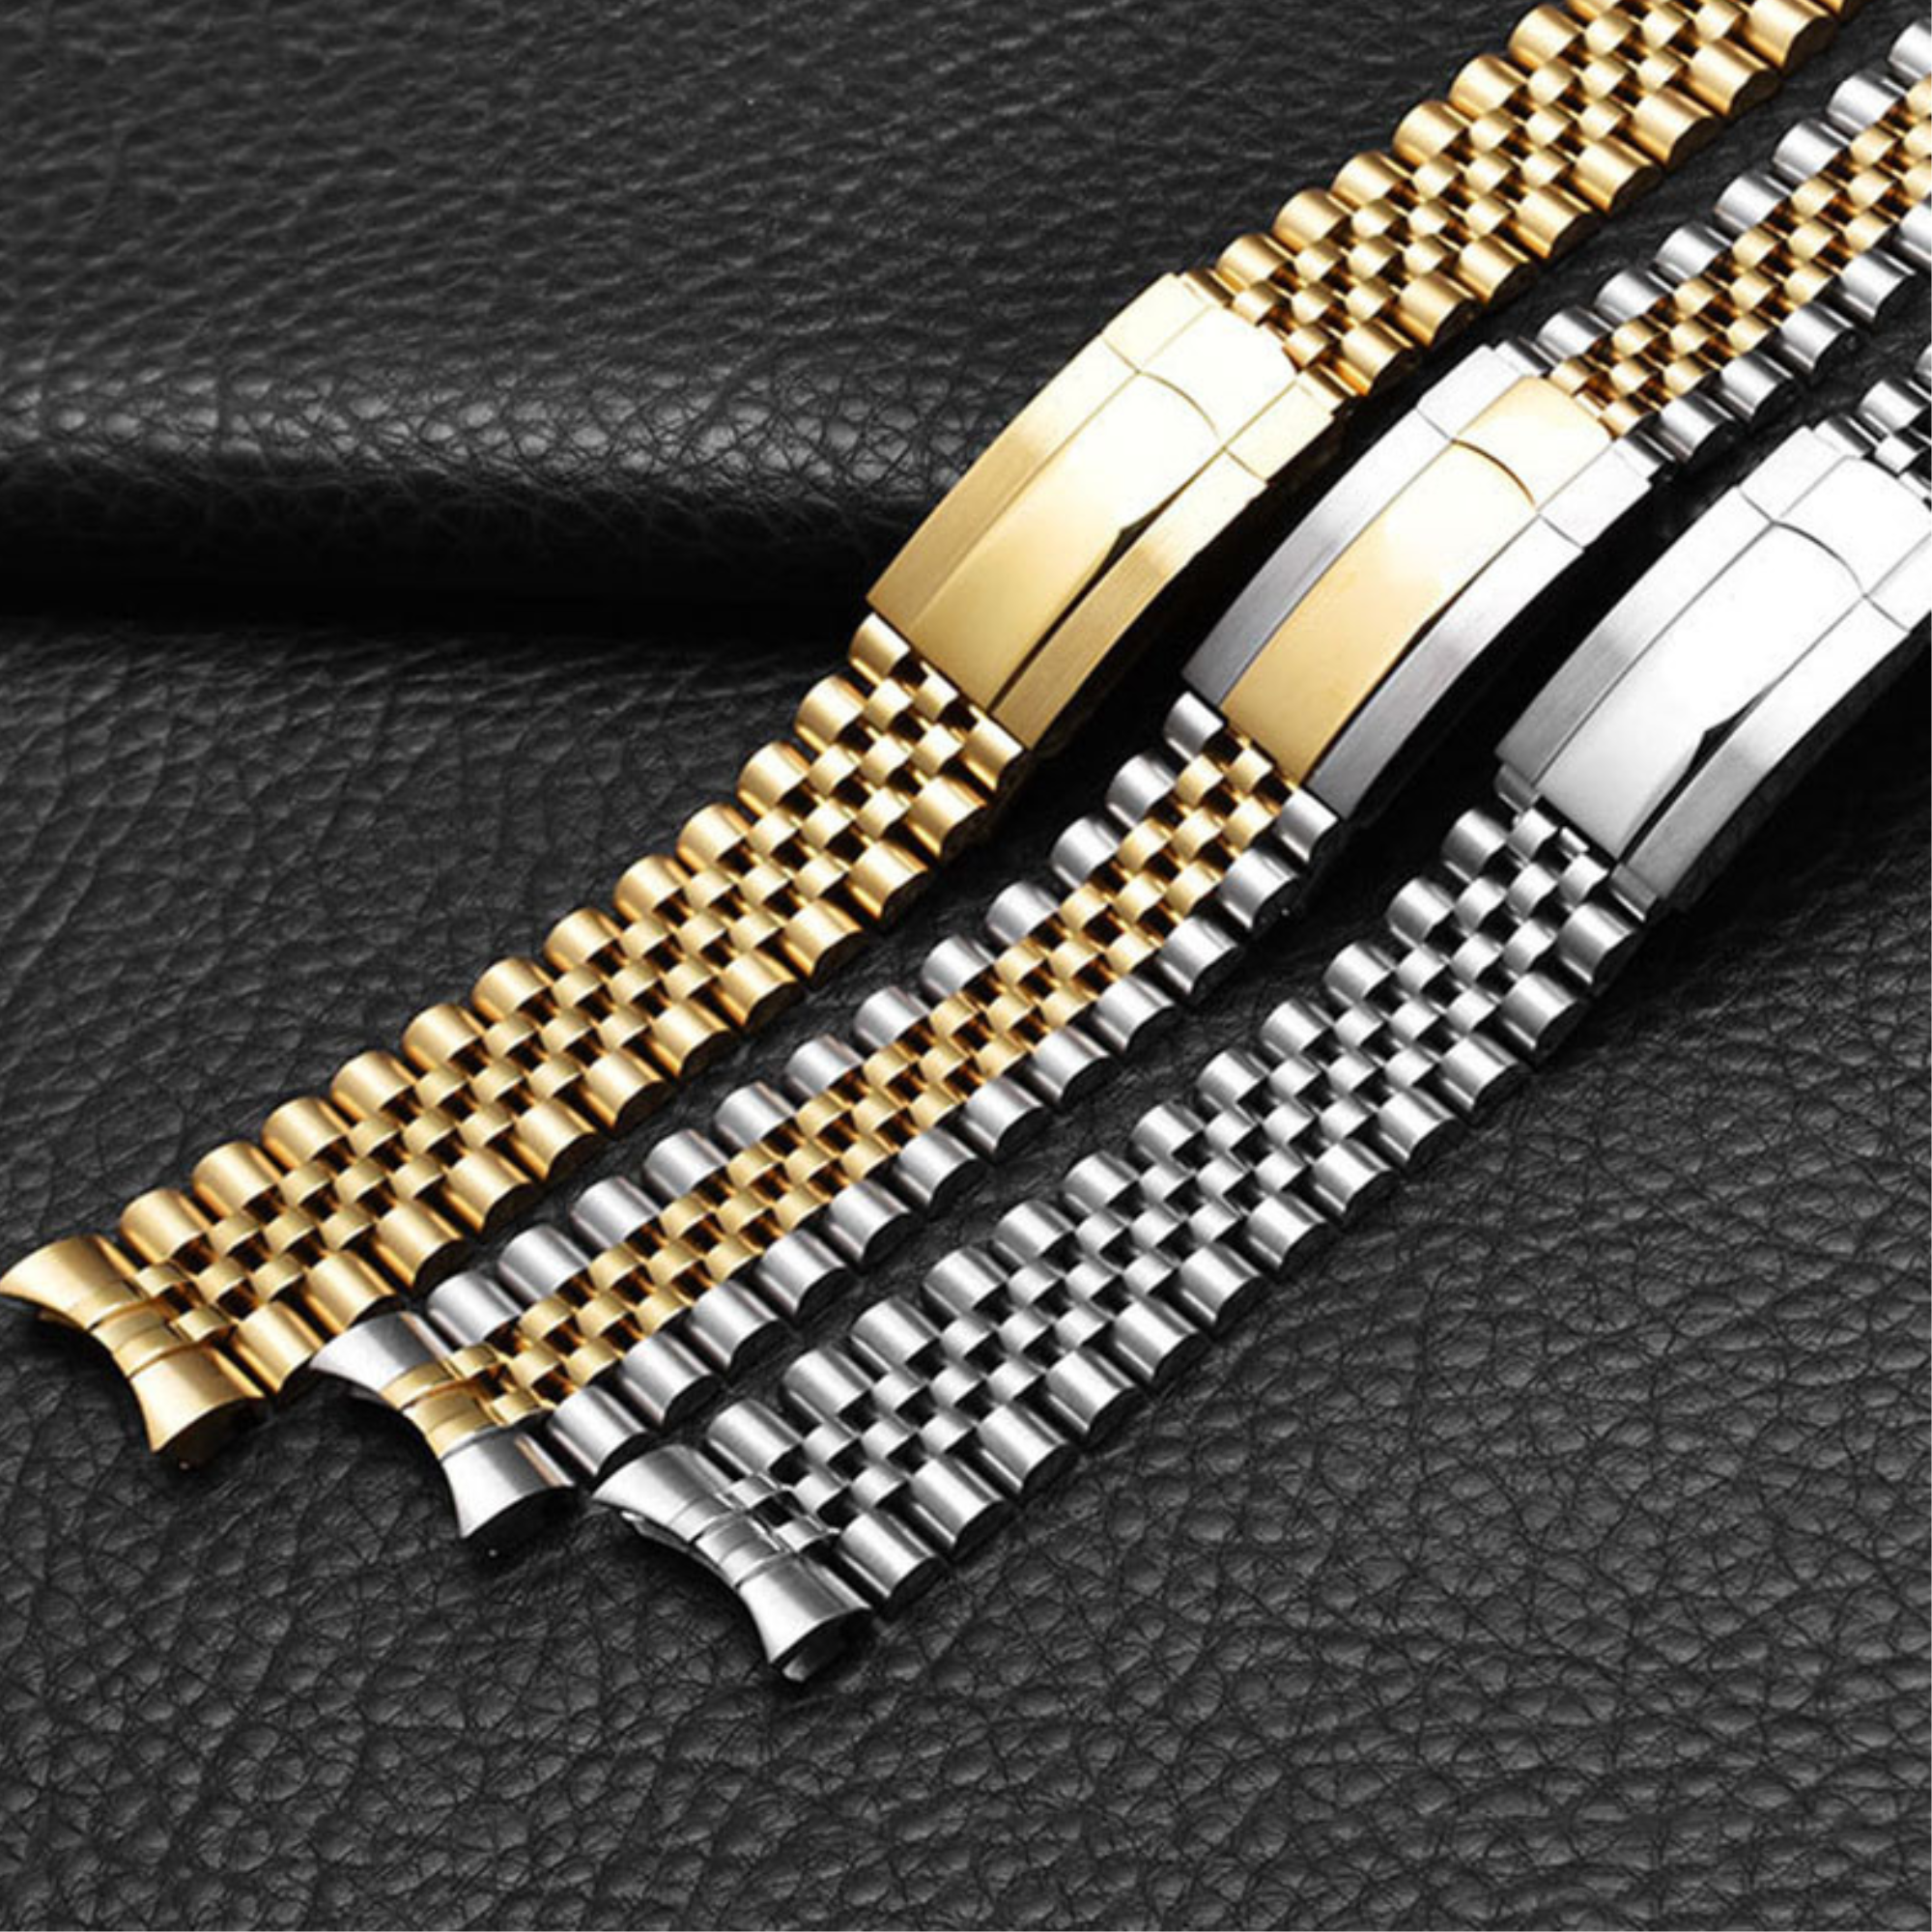 20mm Stainless Steel Vintage Jubilee Watch Band Wristband Bracelet Strap - Rose Gold steel jubilee watch bracelet strap india dream watches